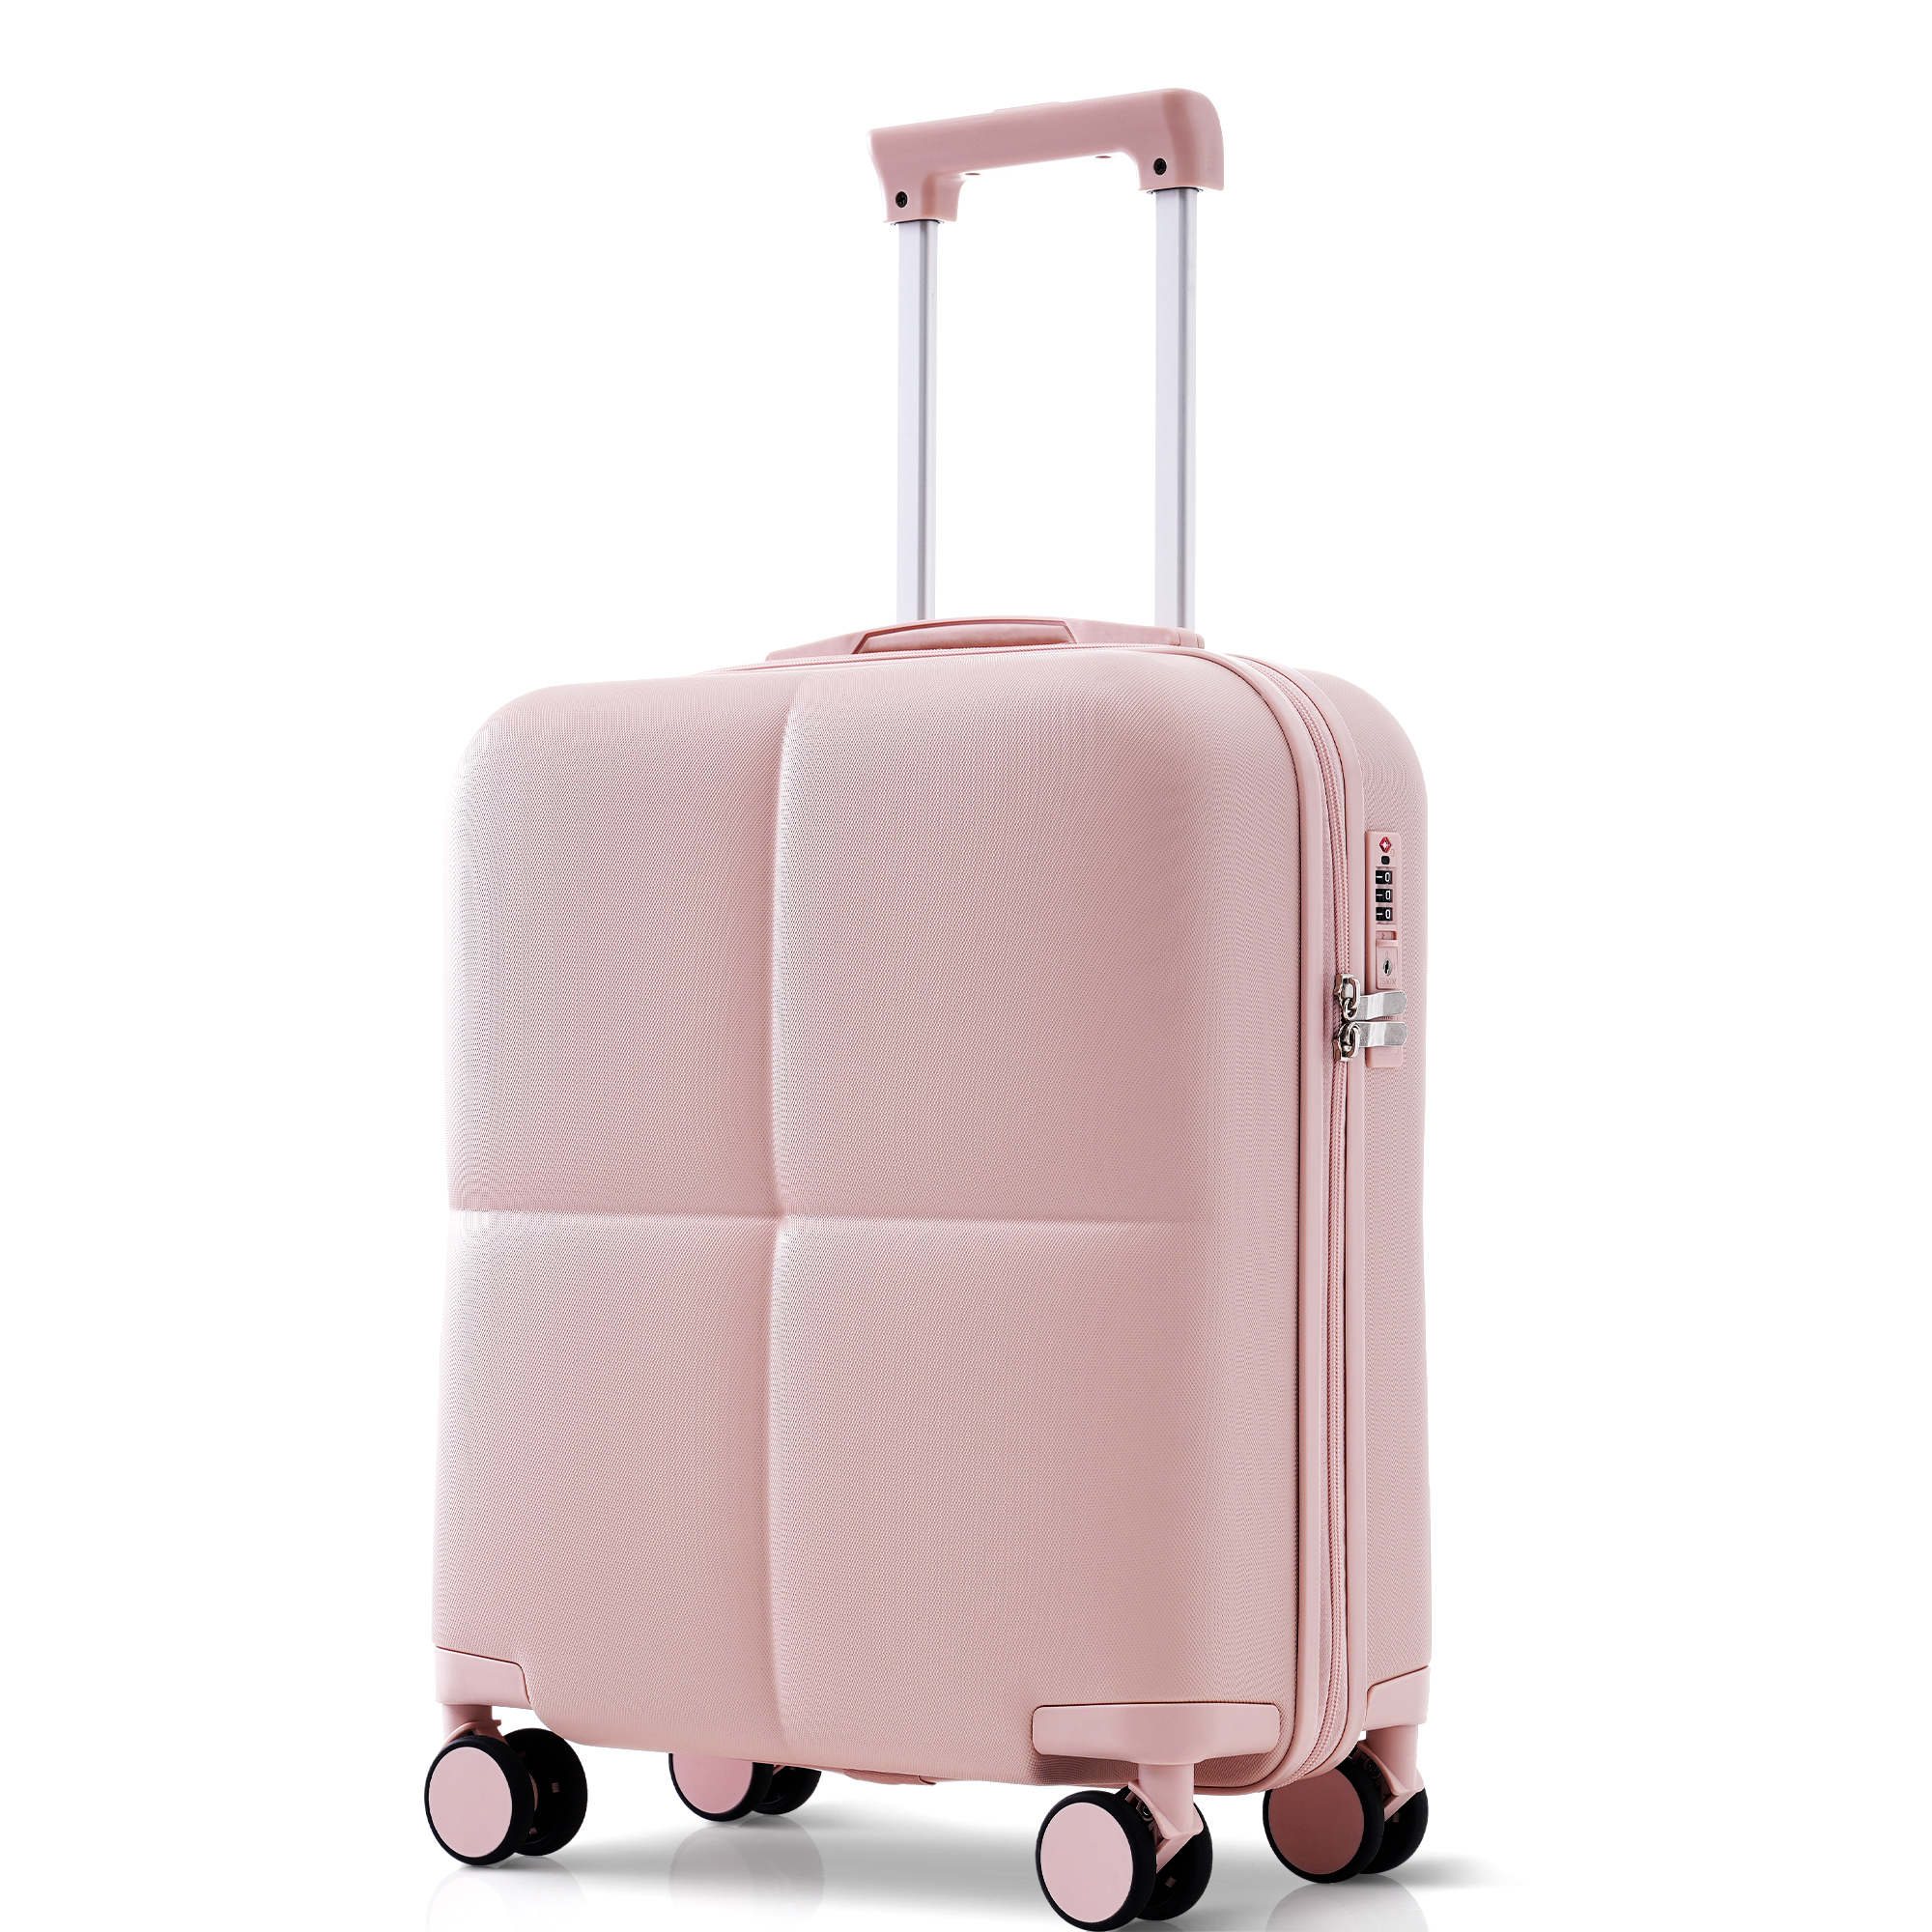 スーツケース Sサイズ キャリーケース キャリバック 機内持ち込 フック搭載 小型 キャリーバッグ 1-3日 超軽量 ストッパー付き おしゃれ  TANOBI